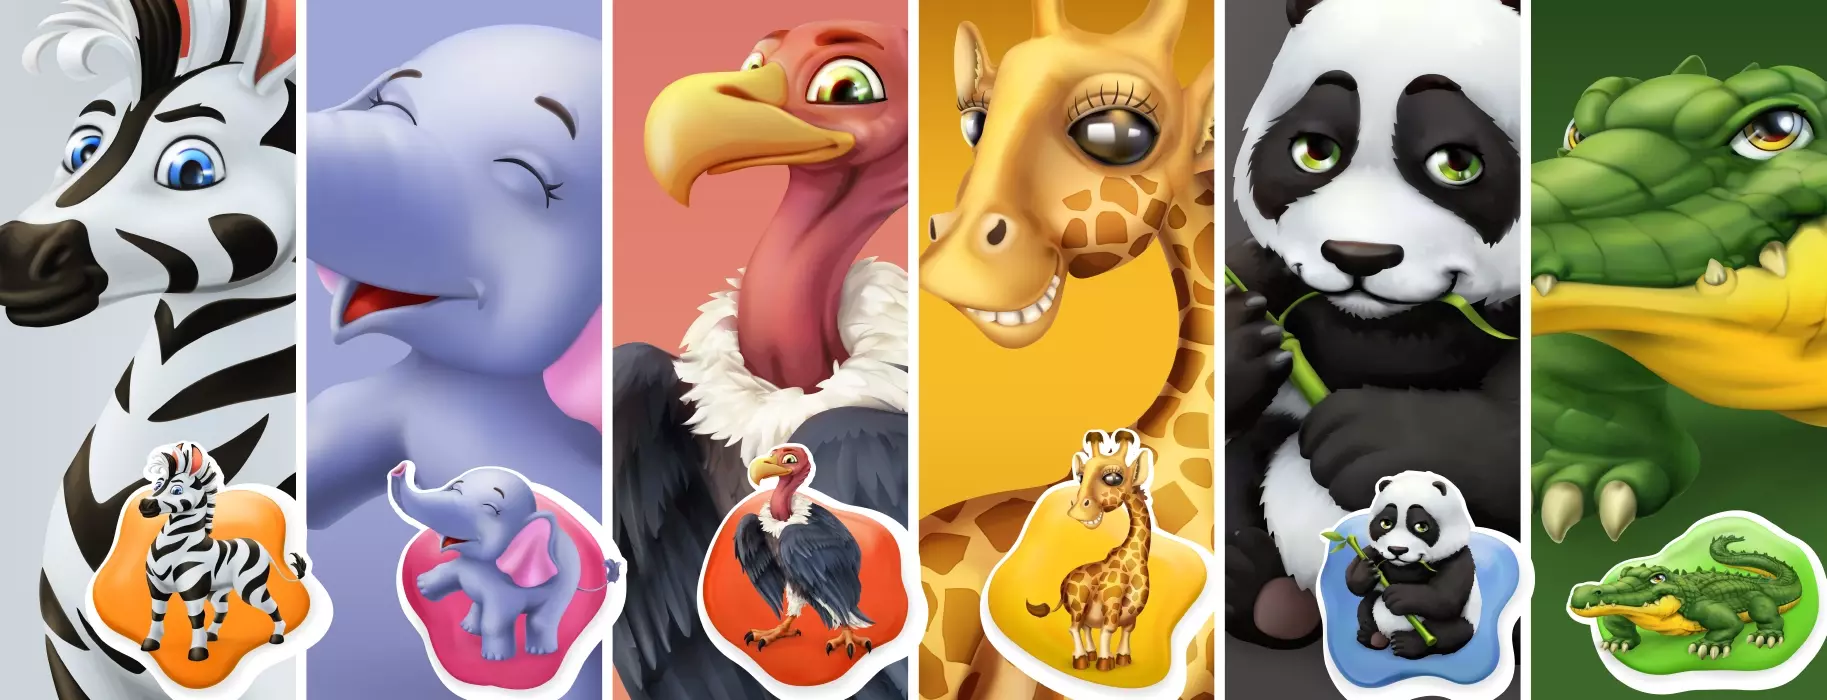 دانلود وکتور مجموعه طراحی سه بعدی حیوانات کارتونی